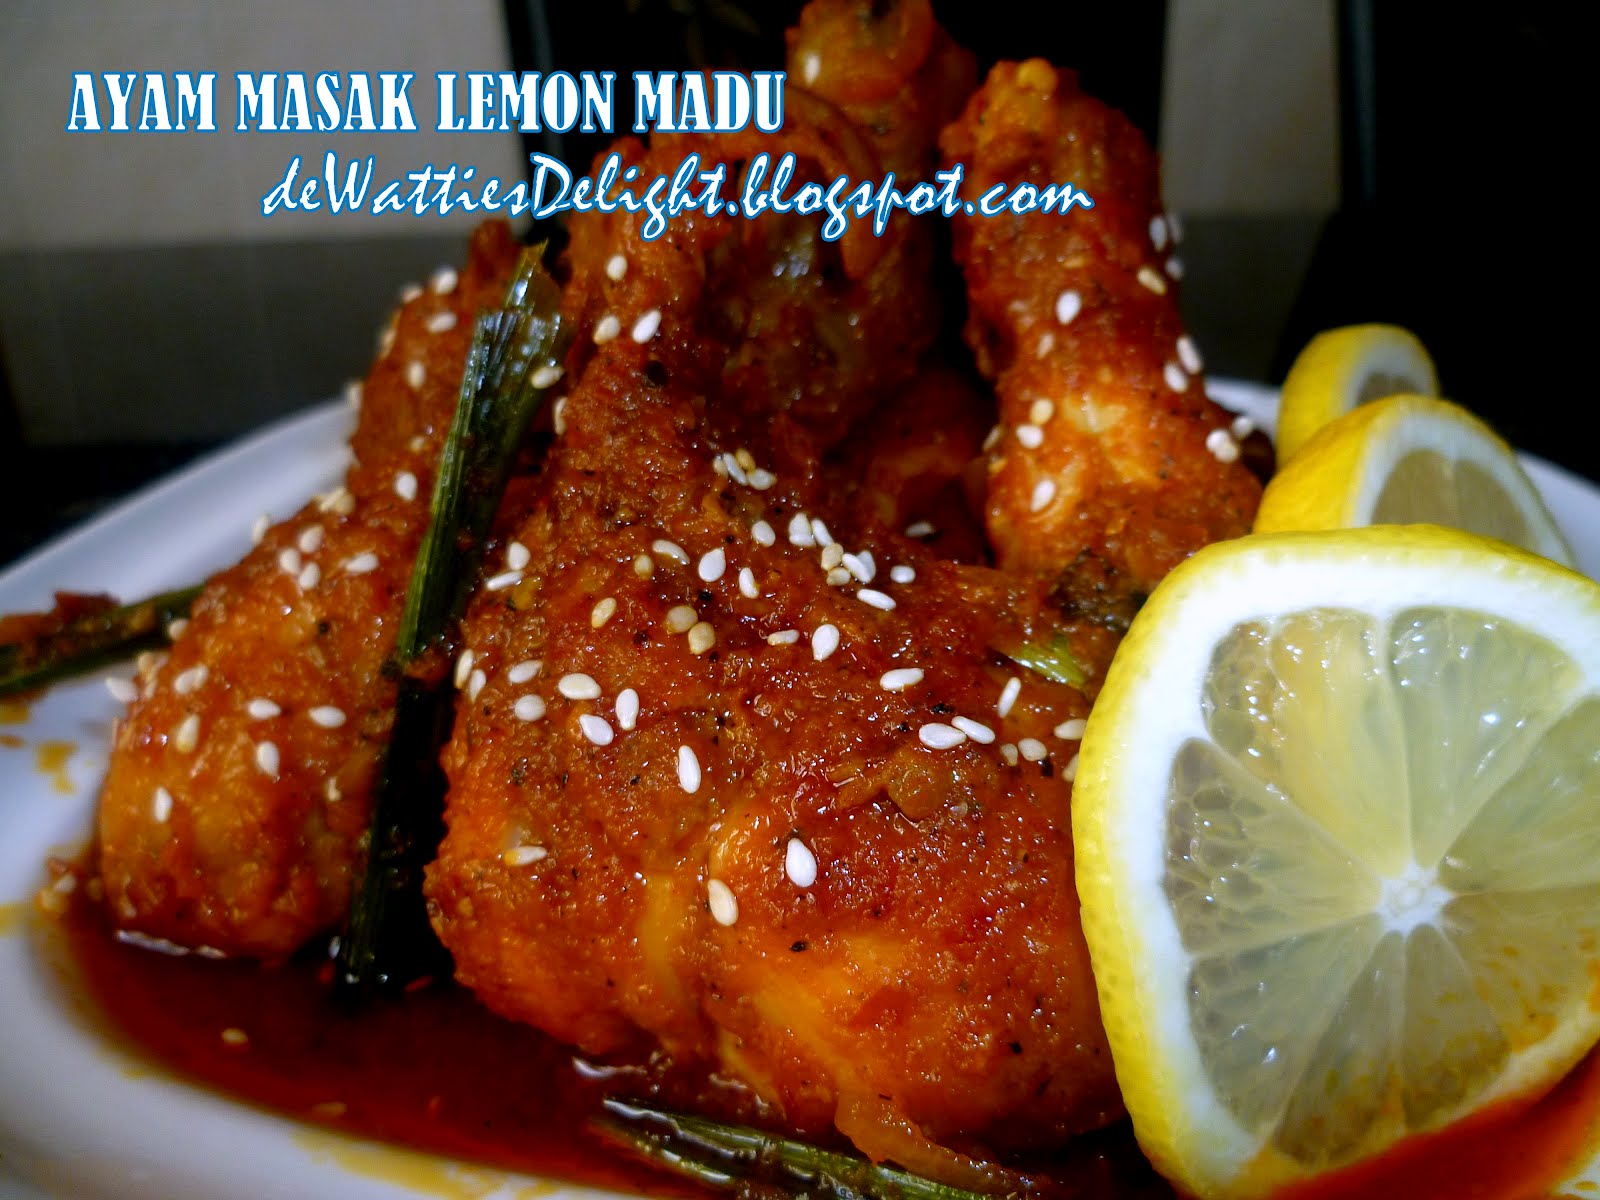 Wattie's HomeMade: Ayam Masak Lemon Madu